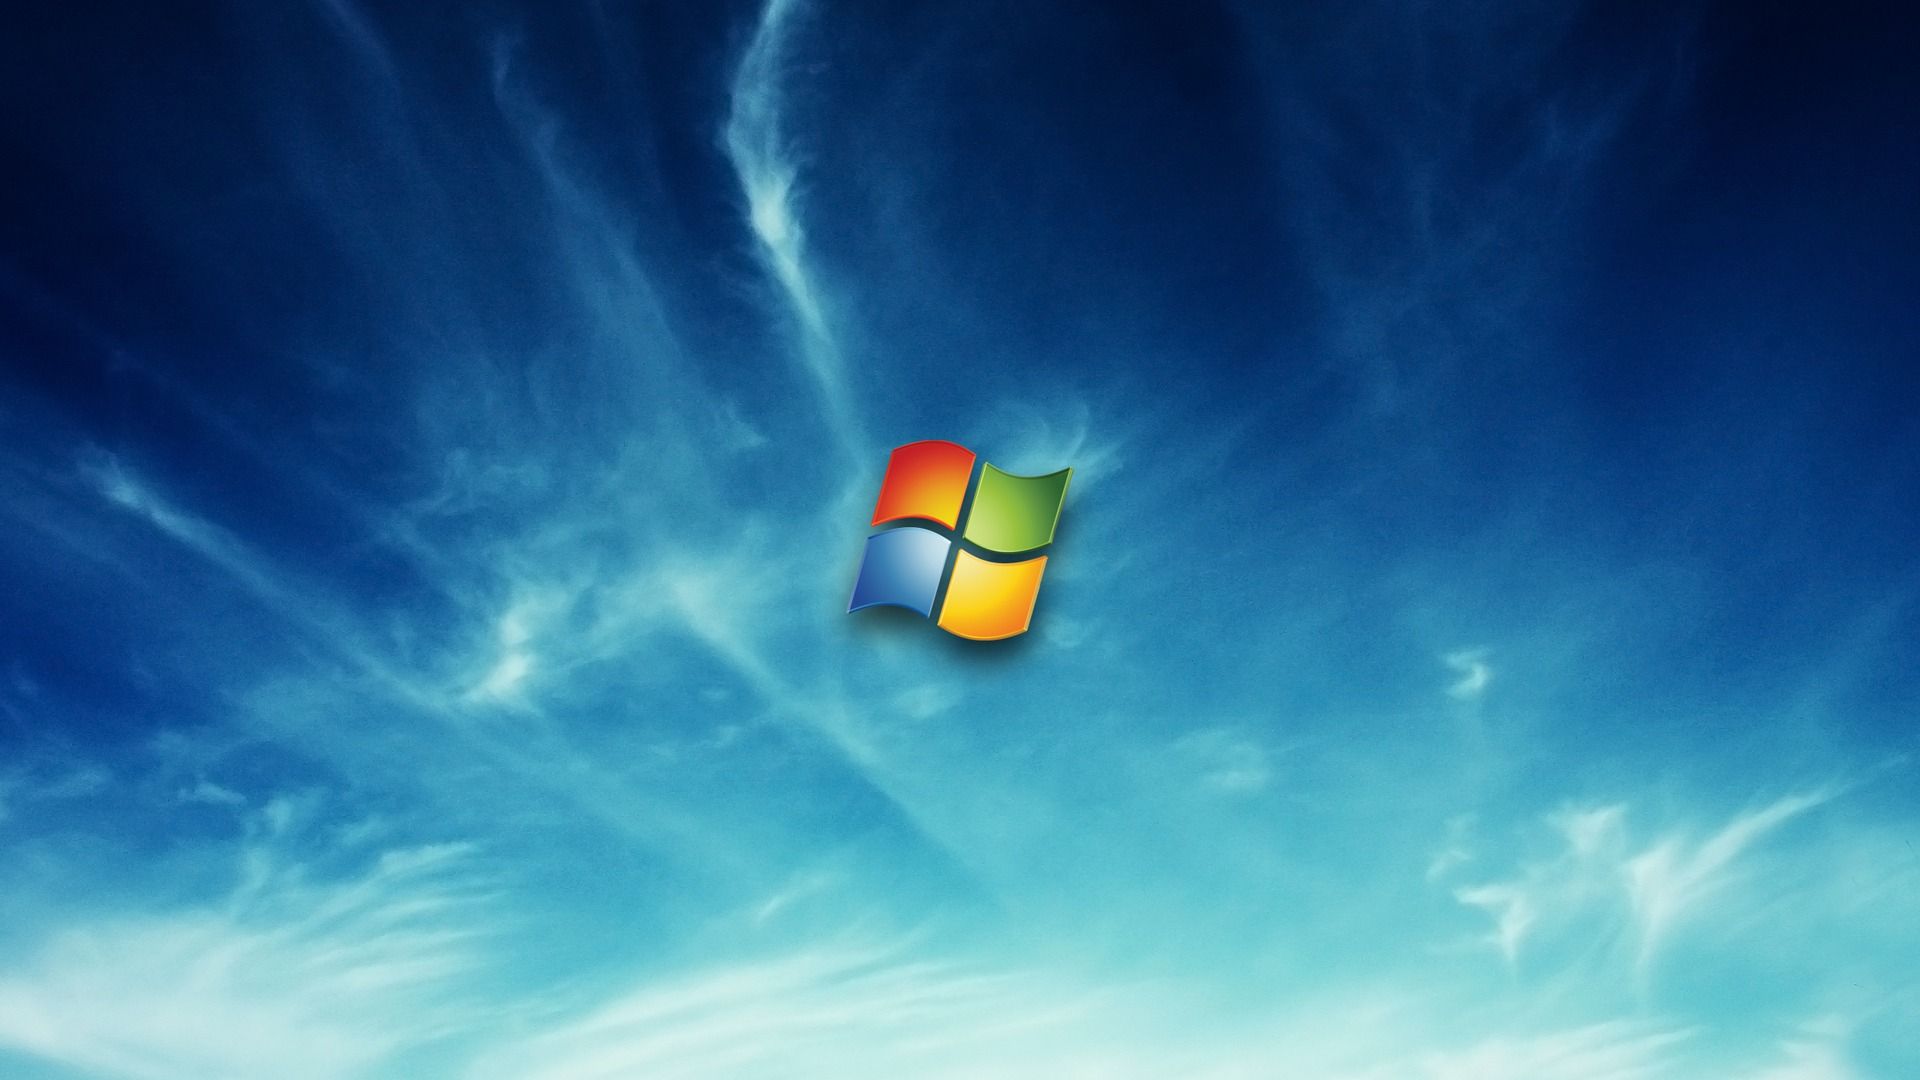 Windows 7 Wallpaper Background Dekstop